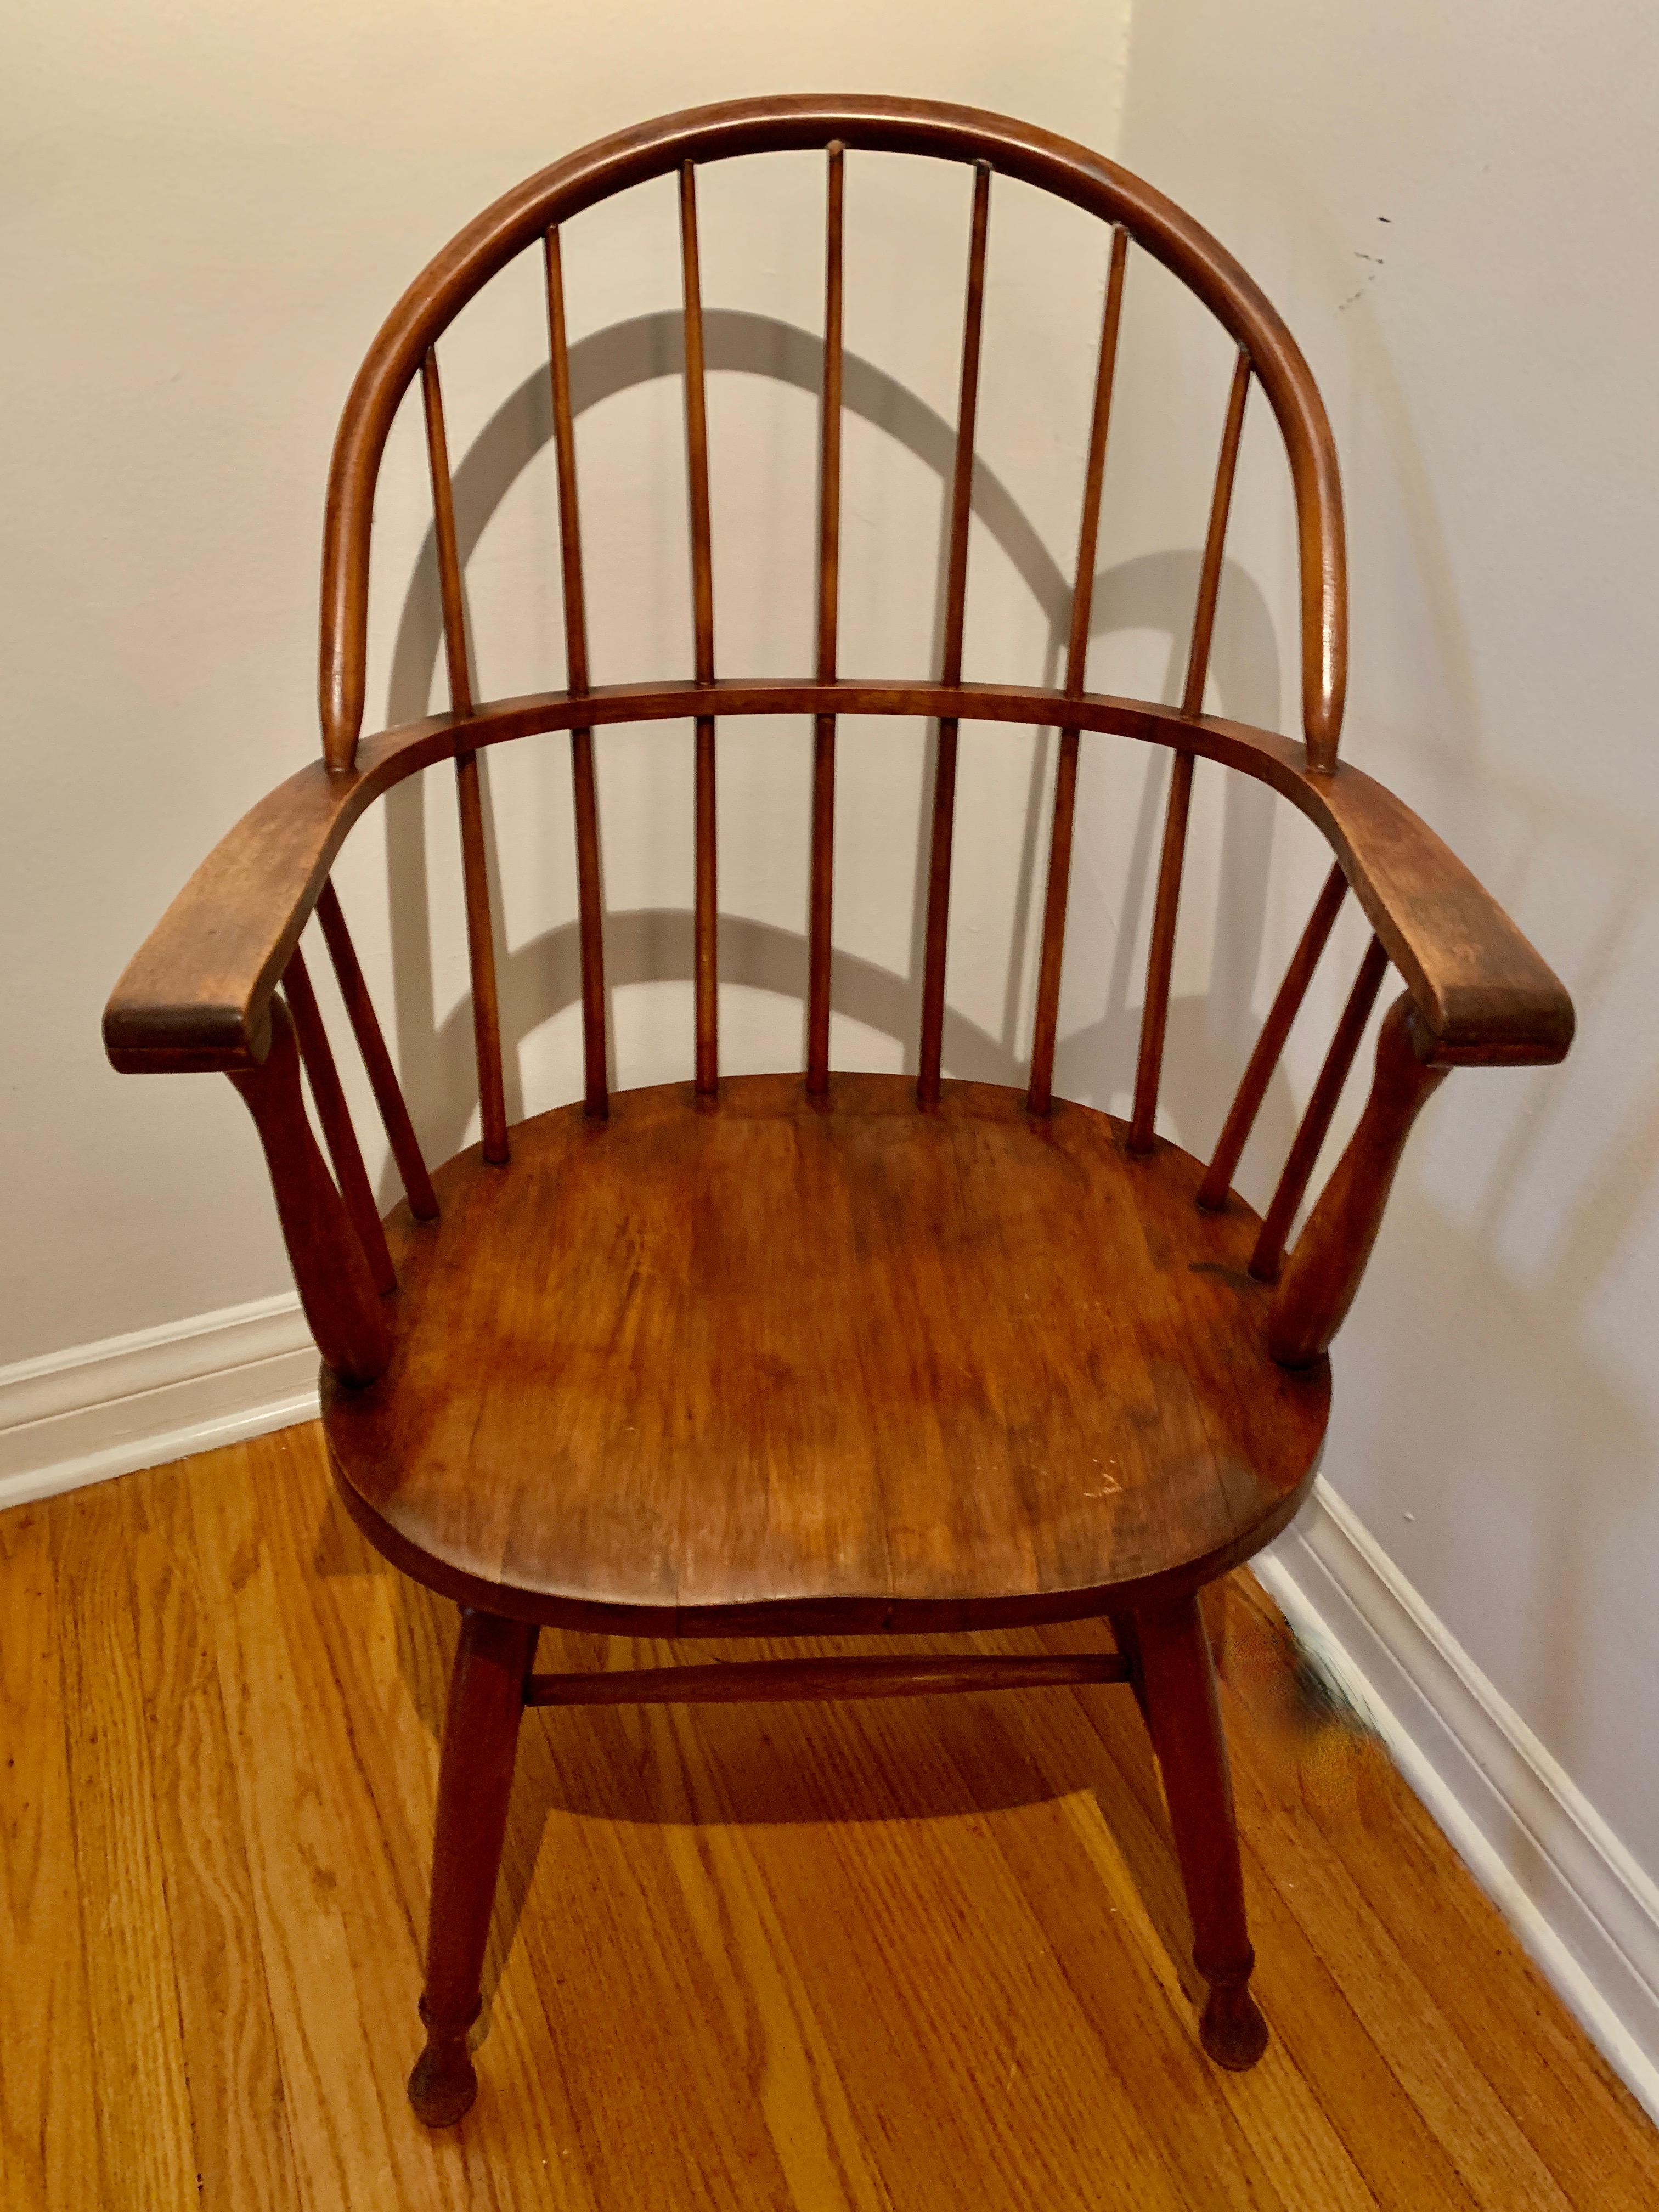 Ein wunderbares Beispiel für einen Windsor Chair. Die handgefertigte Qualität zeigt sich und für das Alter ist das Stück in großartigem Zustand. Da dieser spezielle Windsor-Stil keine schnörkeligen Details aufweist, passt er zu vielen Räumen - von